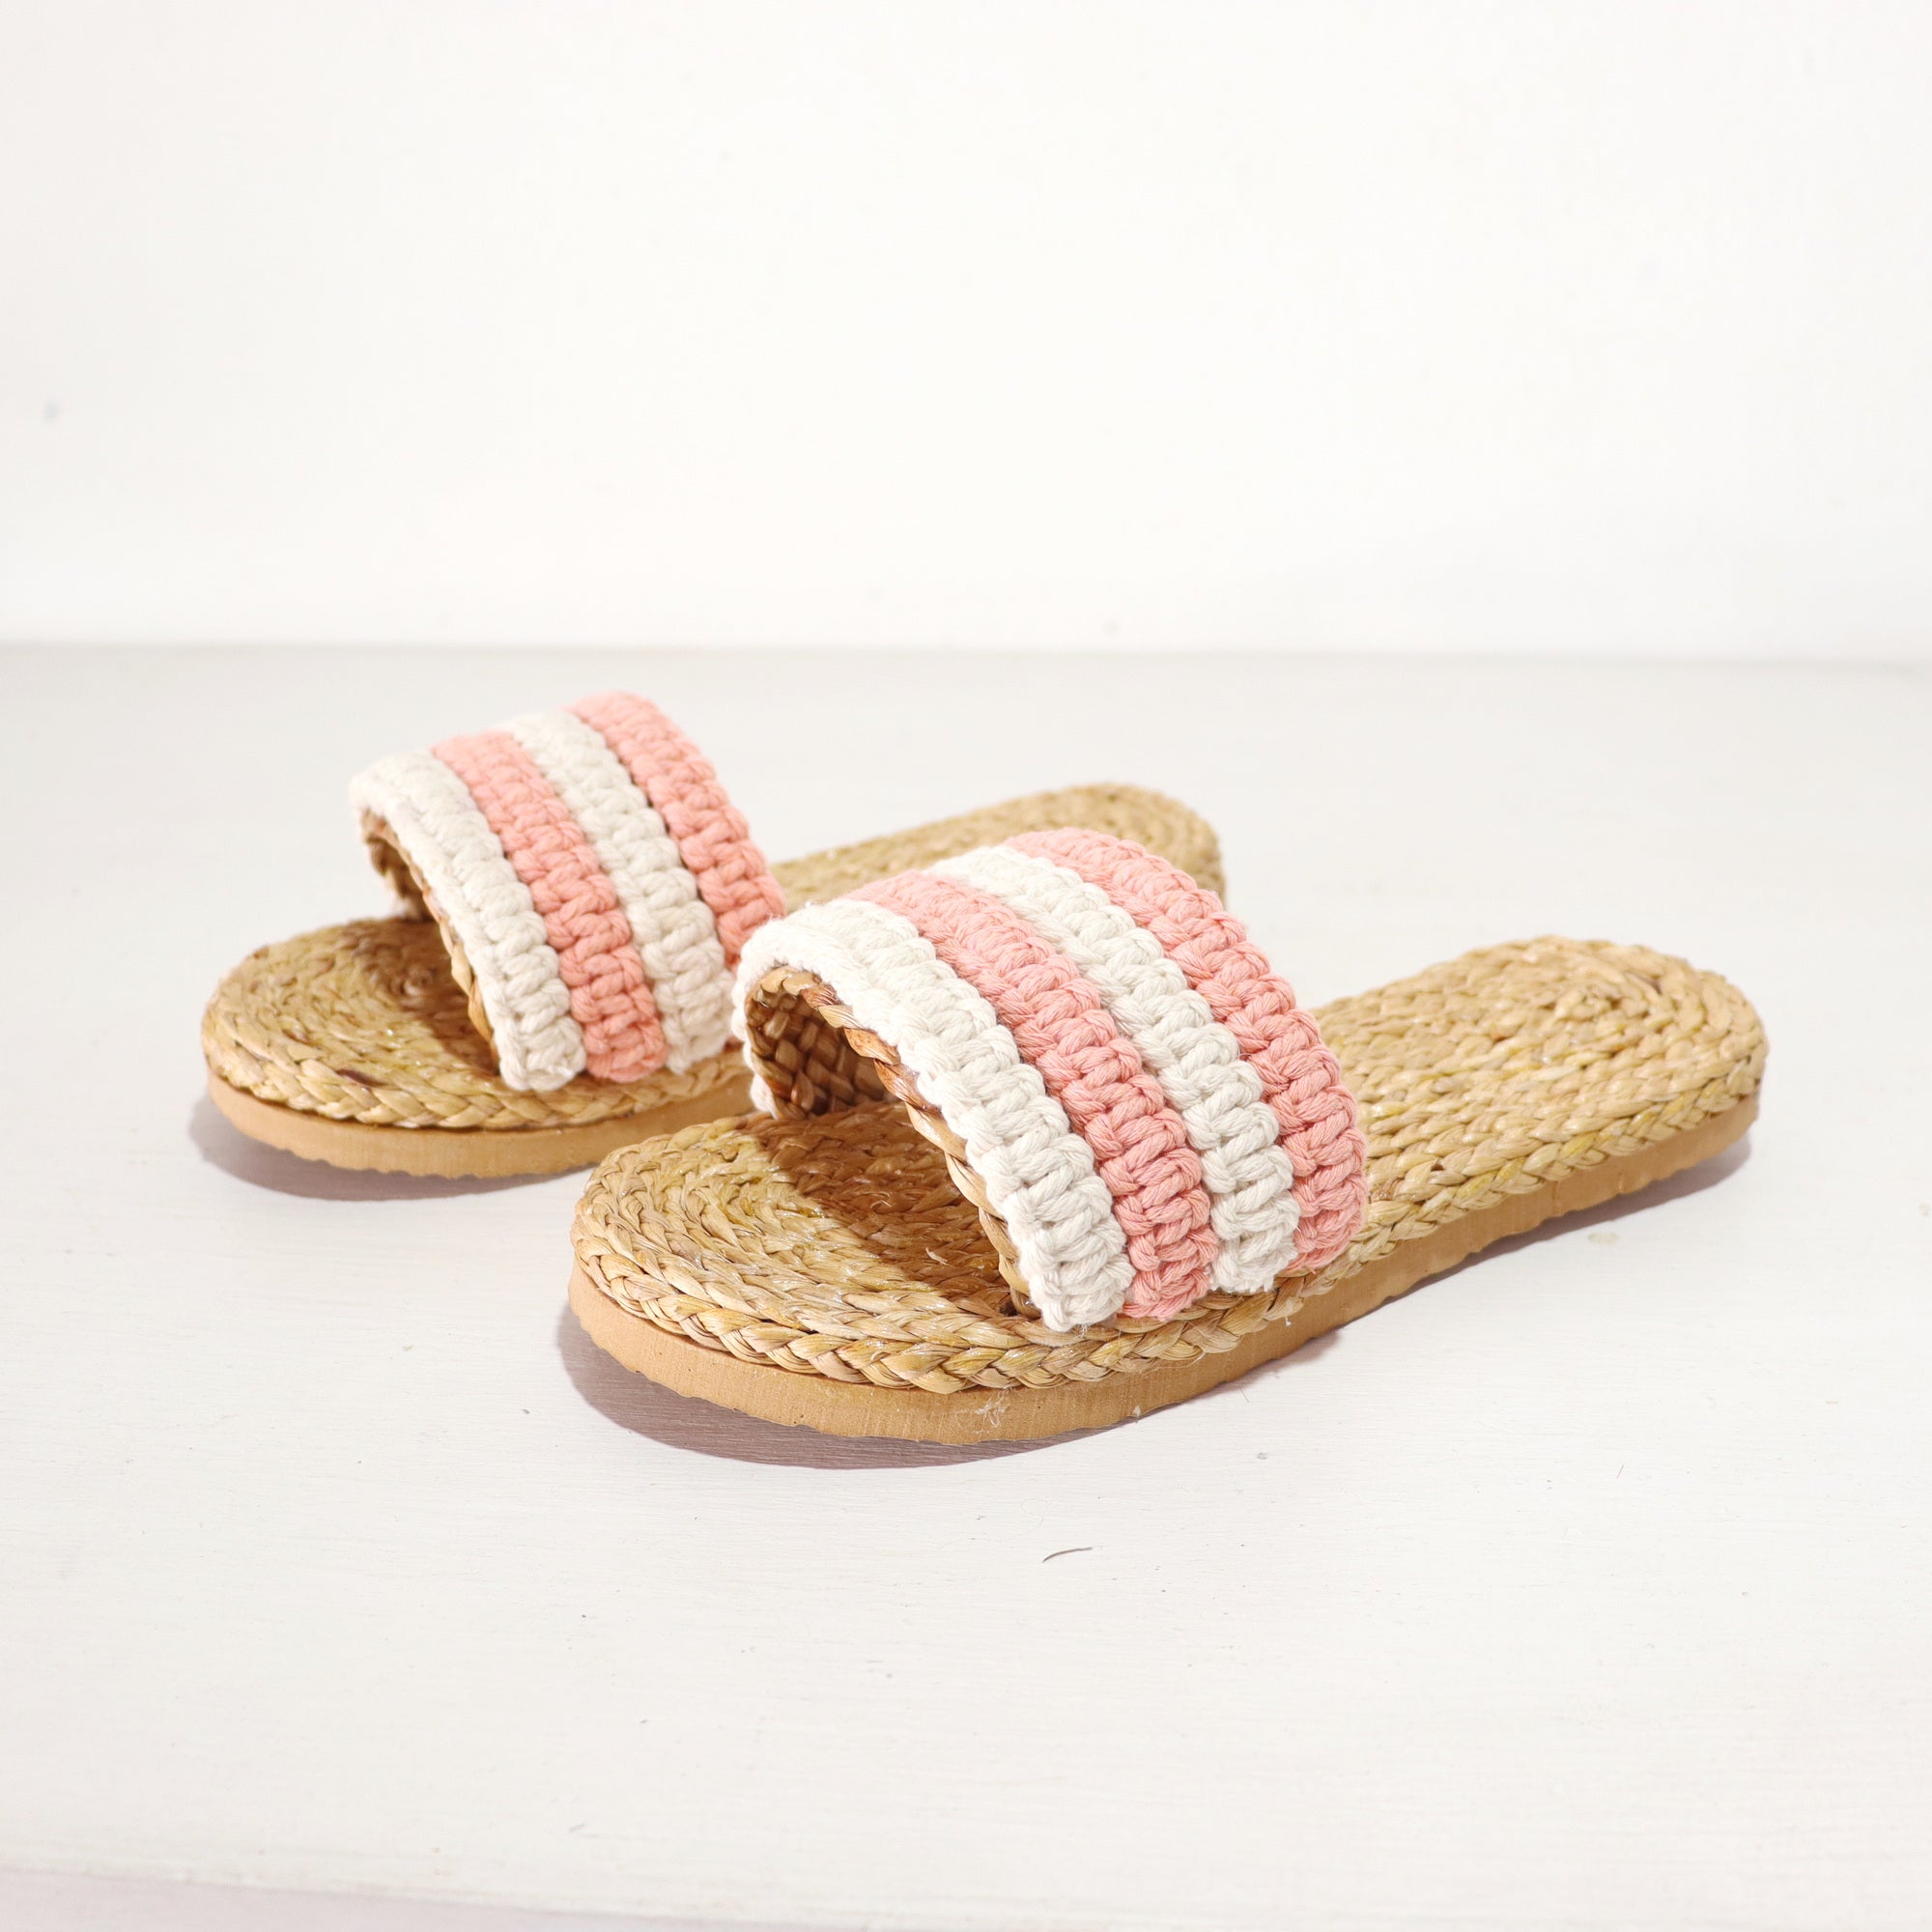 Ravi - Chaussures en paille macramé rose et blanc